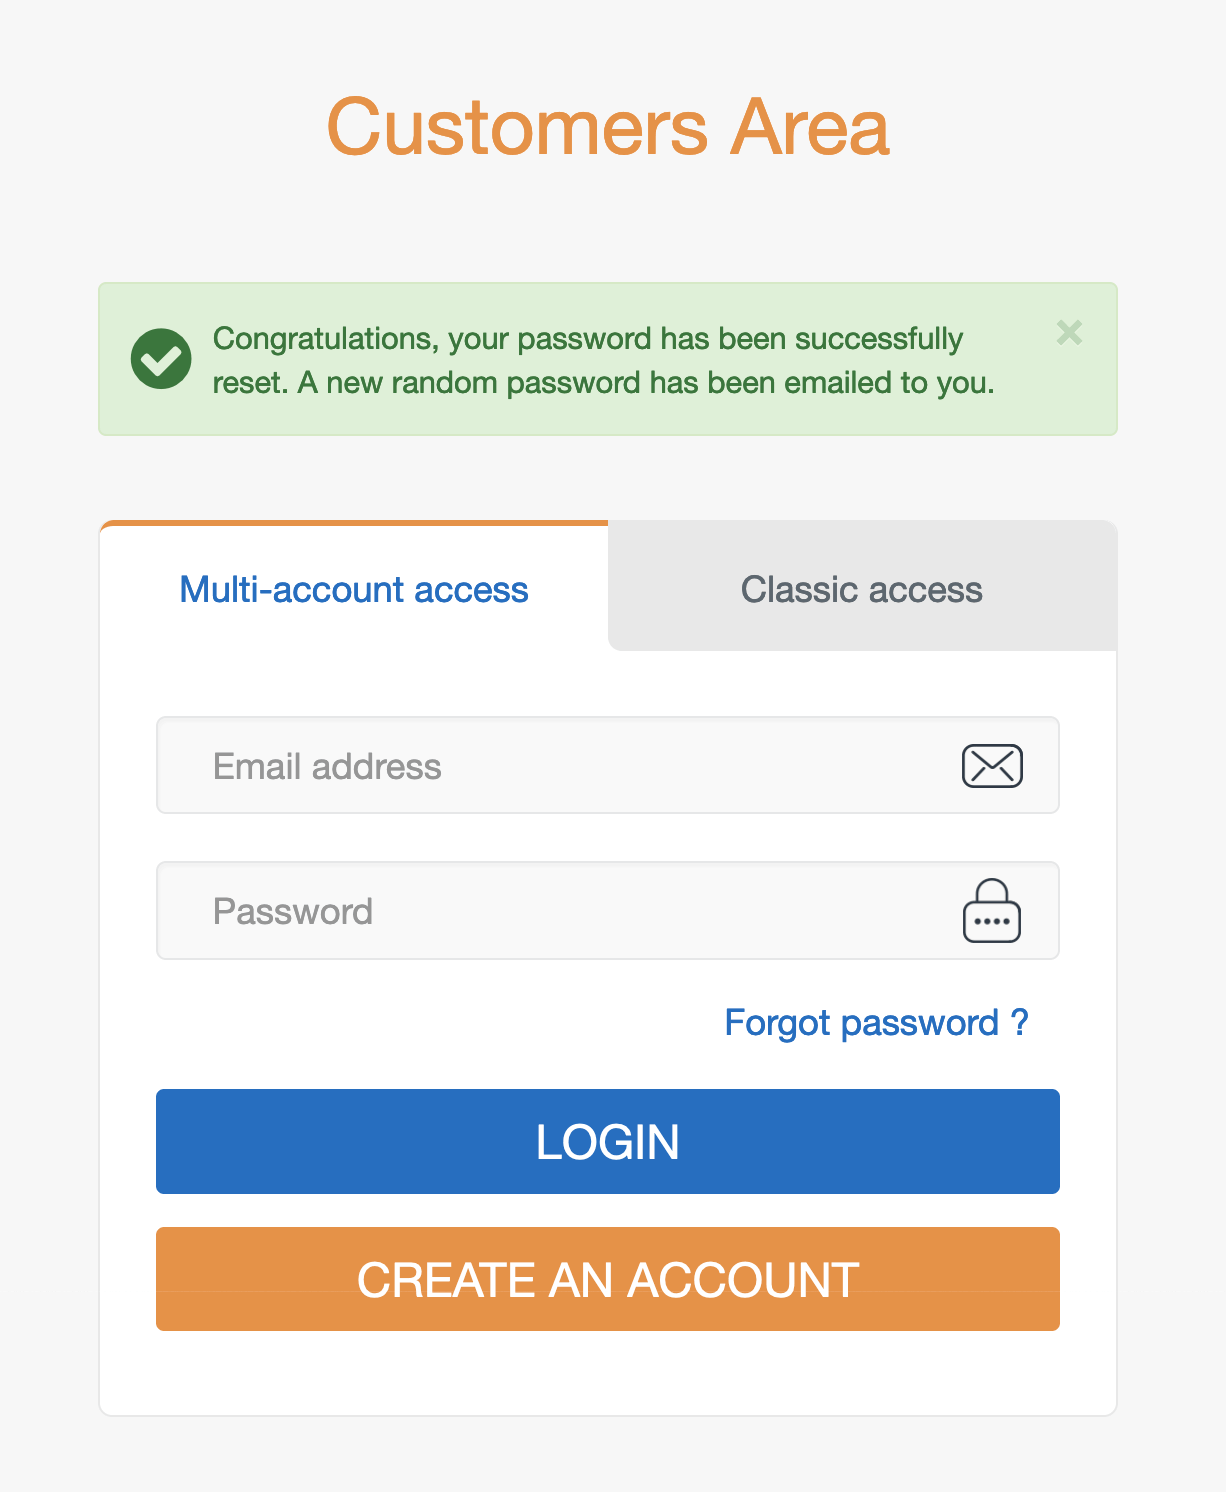 en-customer-area-multiaccount-new-password-sent.png